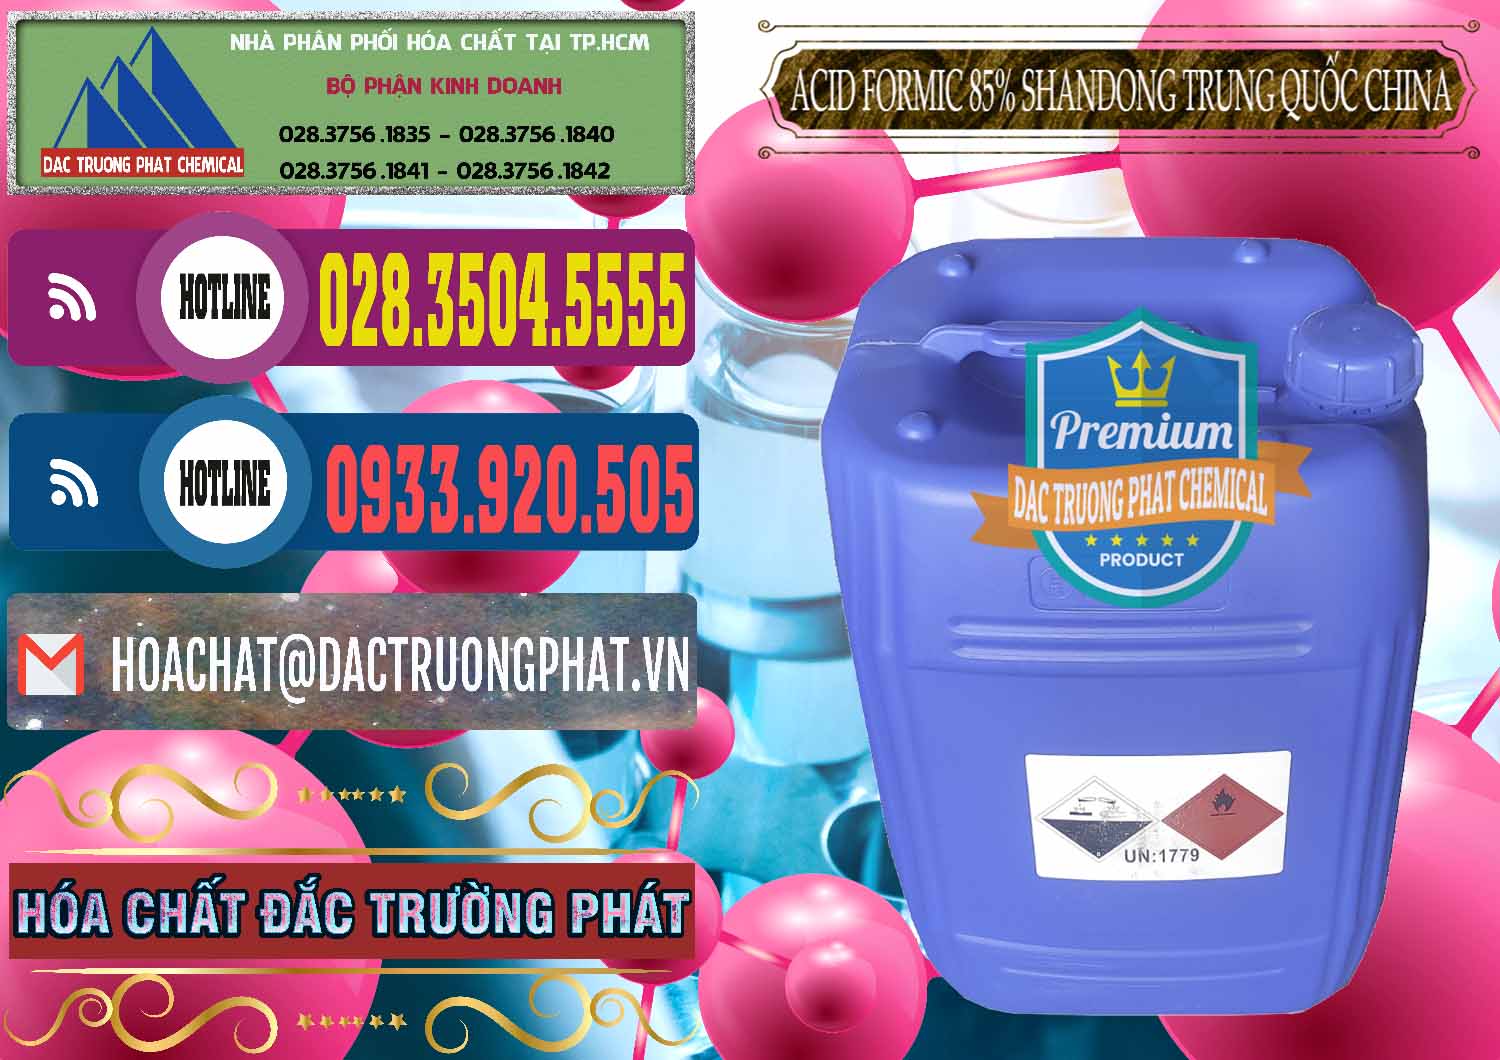 Cung ứng ( bán ) Acid Formic - Axit Formic 85% Shandong Trung Quốc China - 0235 - Nhà cung cấp ( phân phối ) hóa chất tại TP.HCM - muabanhoachat.com.vn